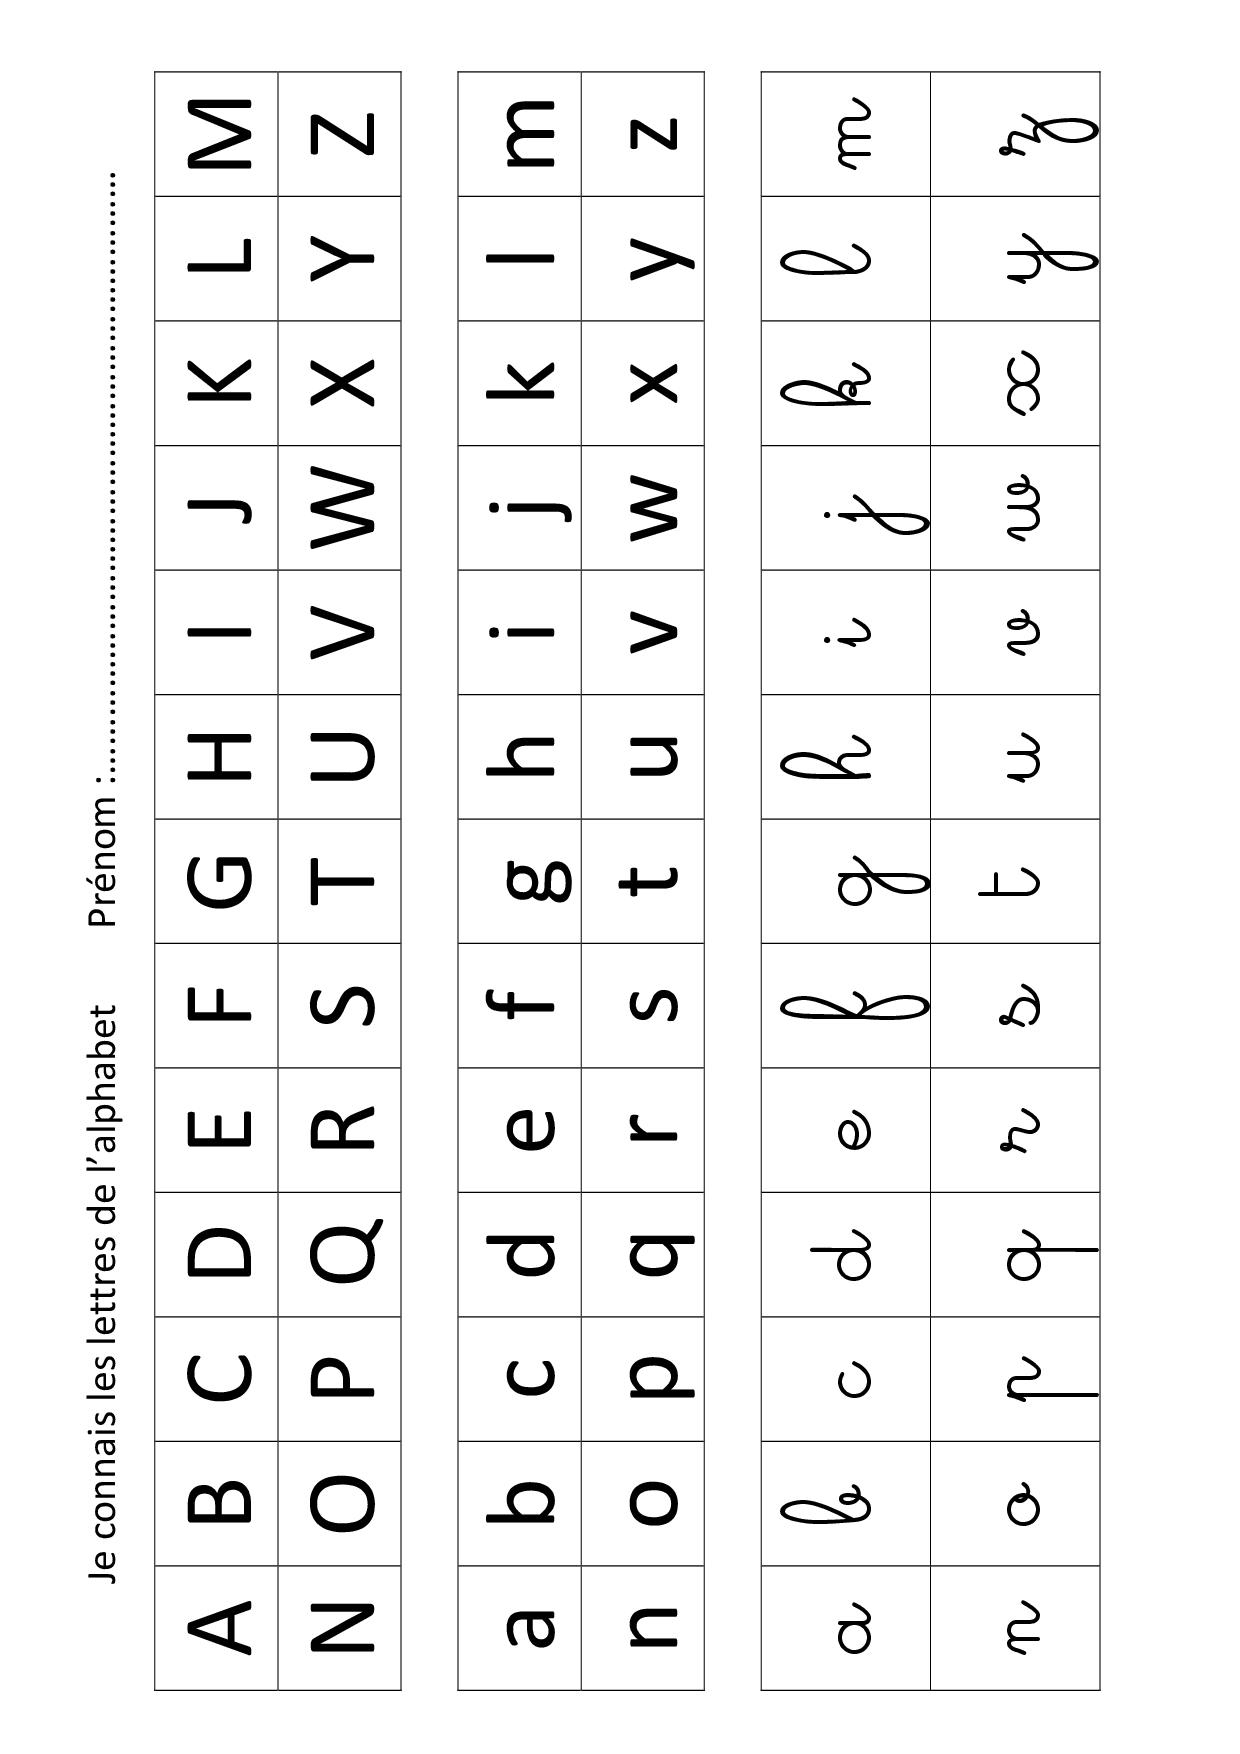 Apprendre Les Lettres De L'alphabet Avec Leap Frog - La encequiconcerne Ecrire L Alphabet